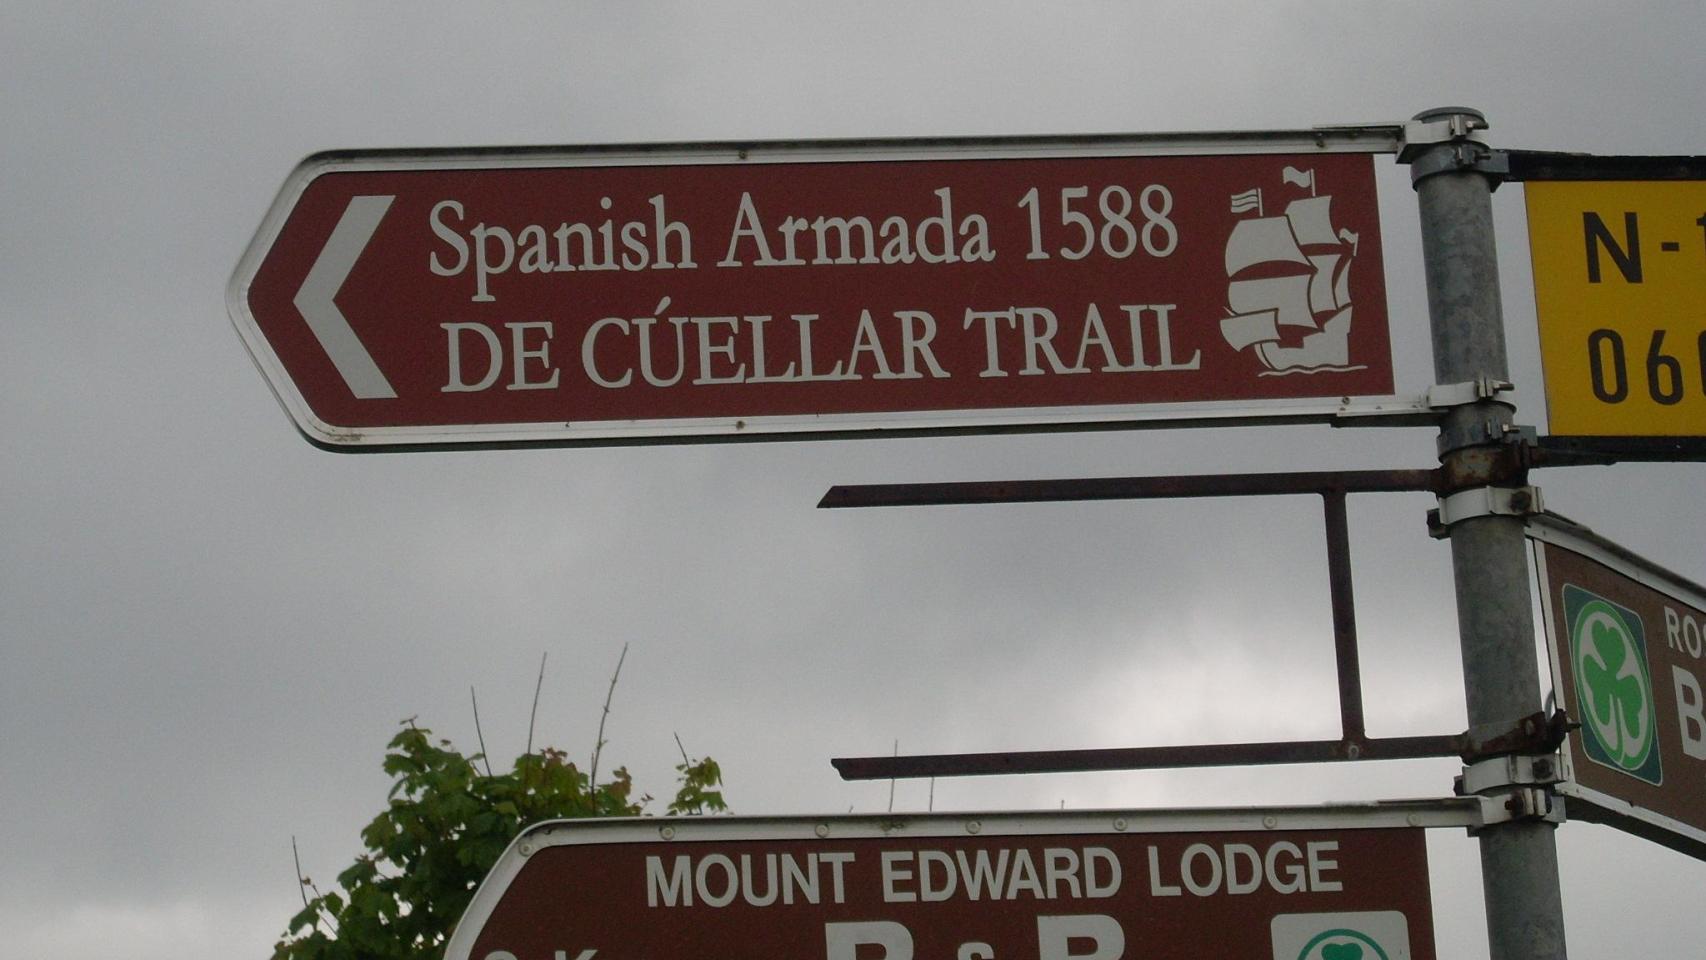 Señalización de la ruta de Francisco de Cuéllar.